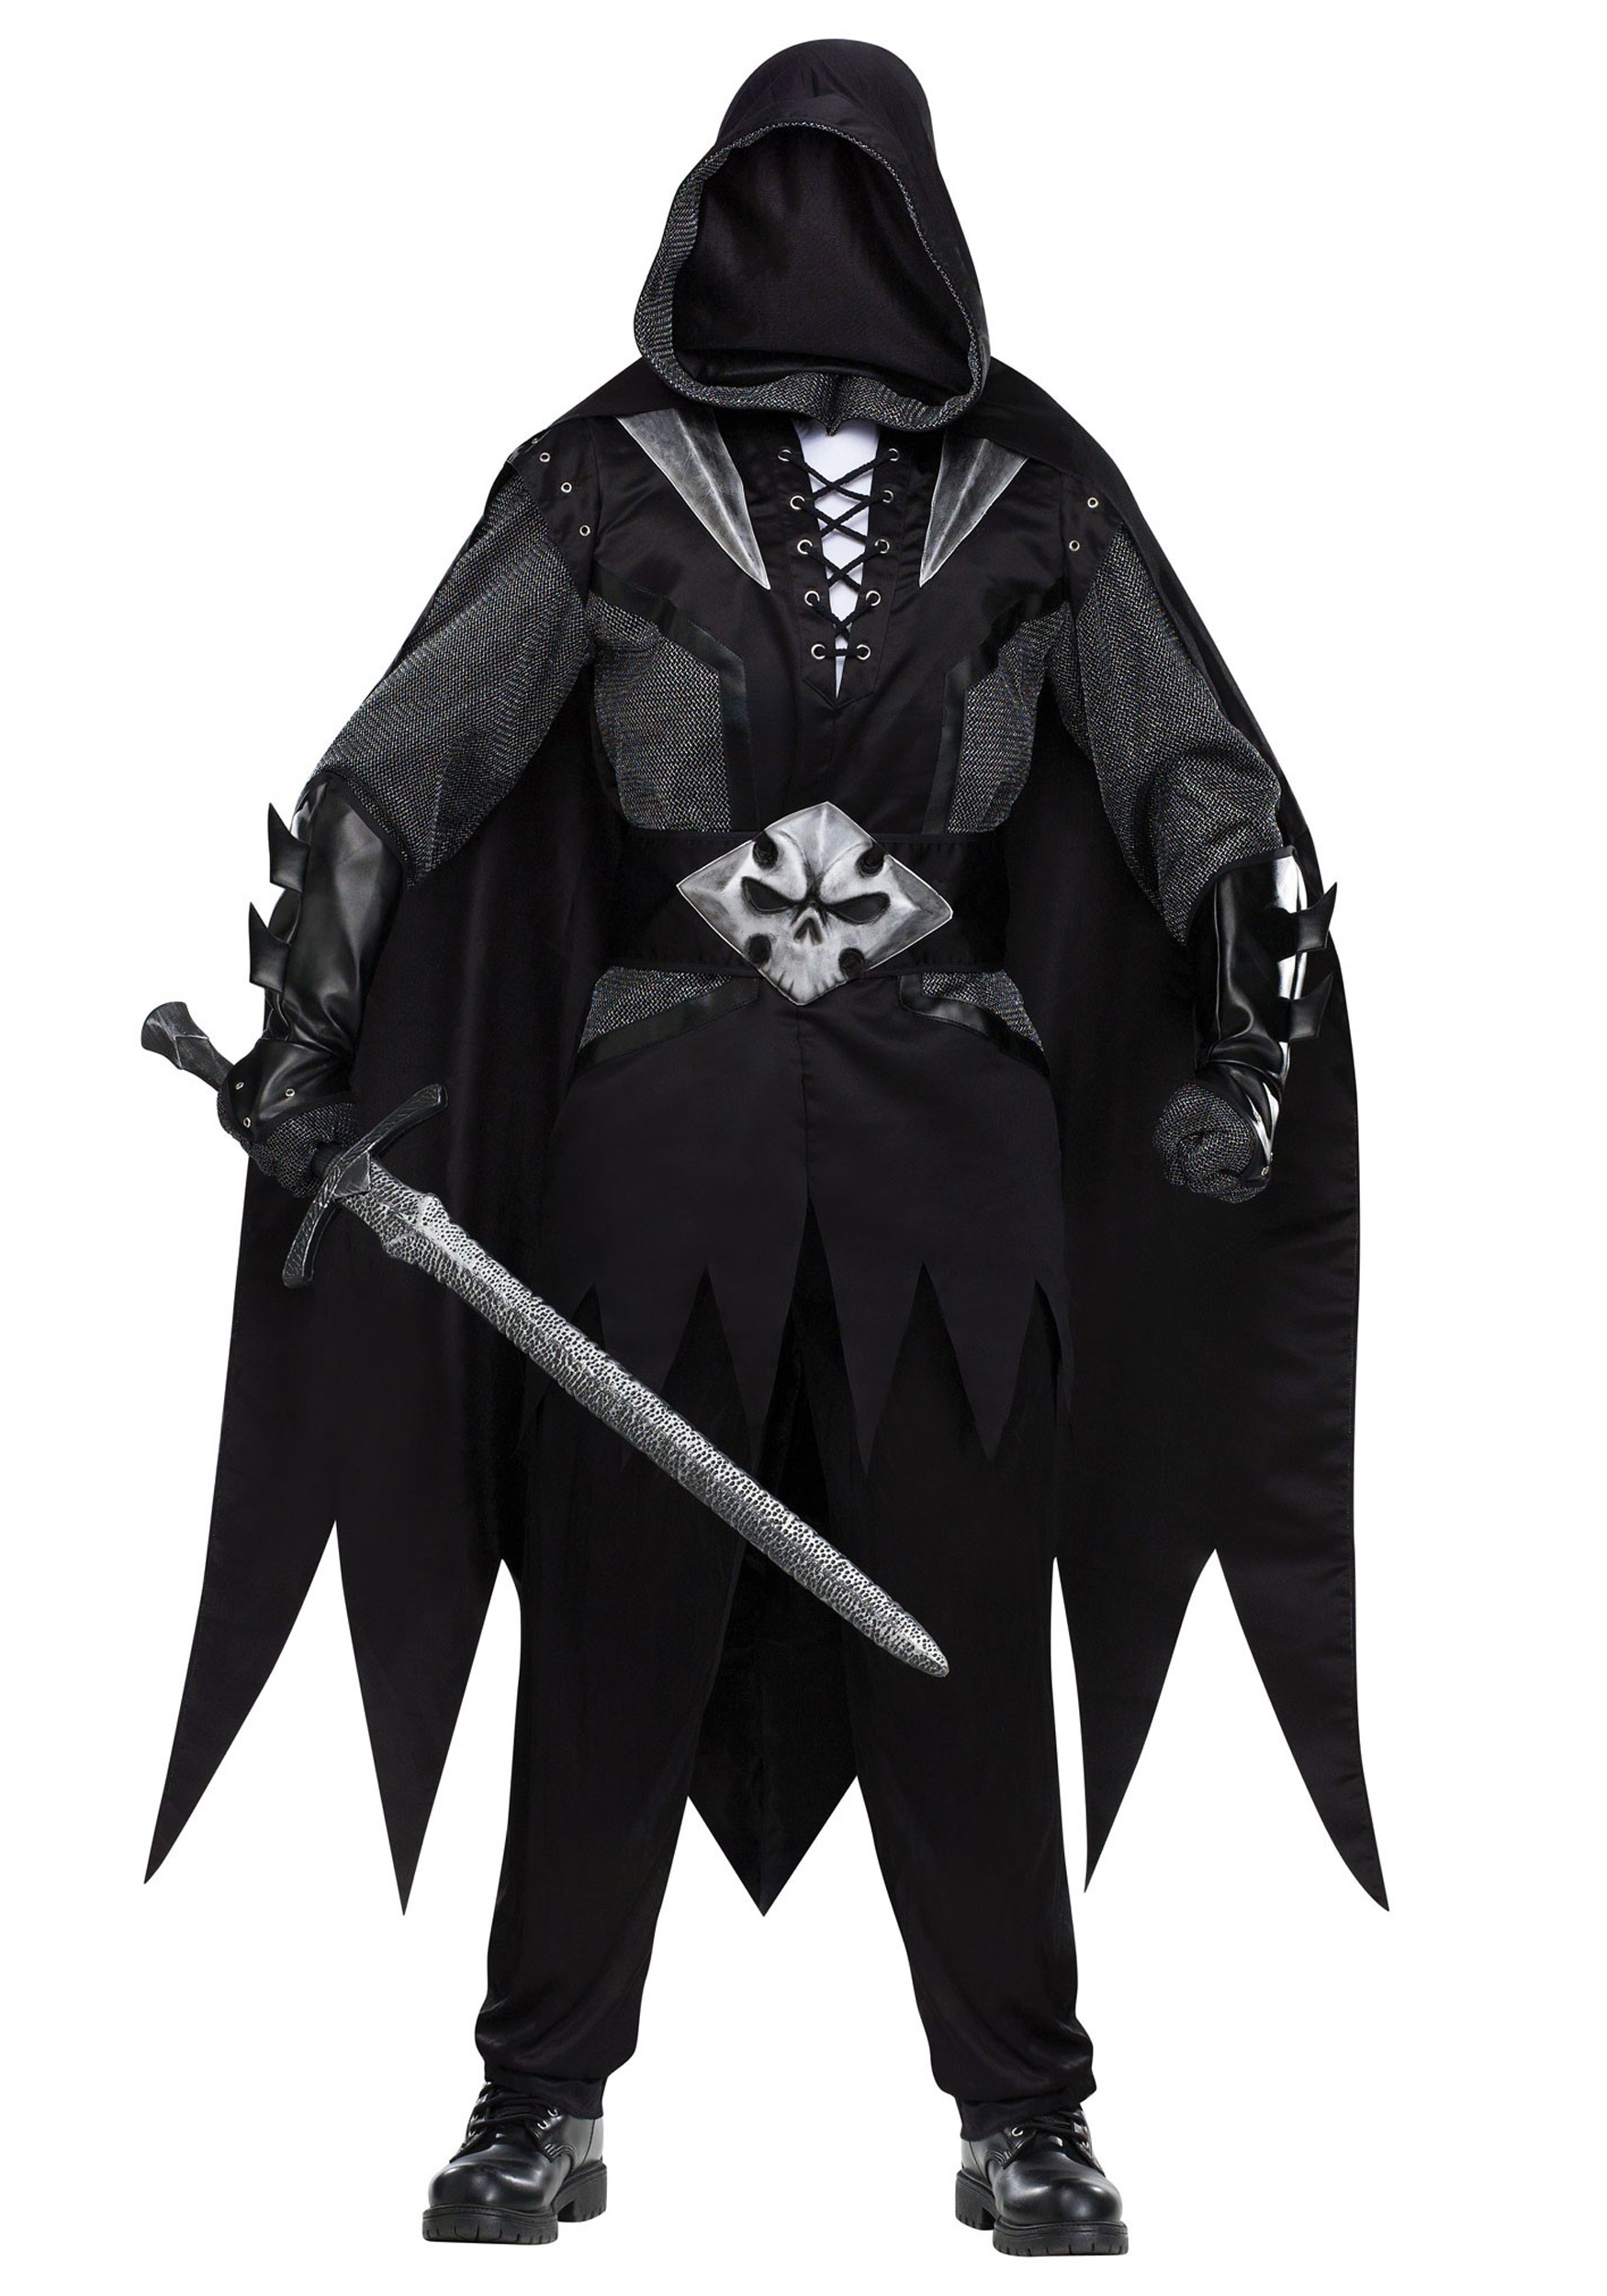 Evil Knight Costume for Men